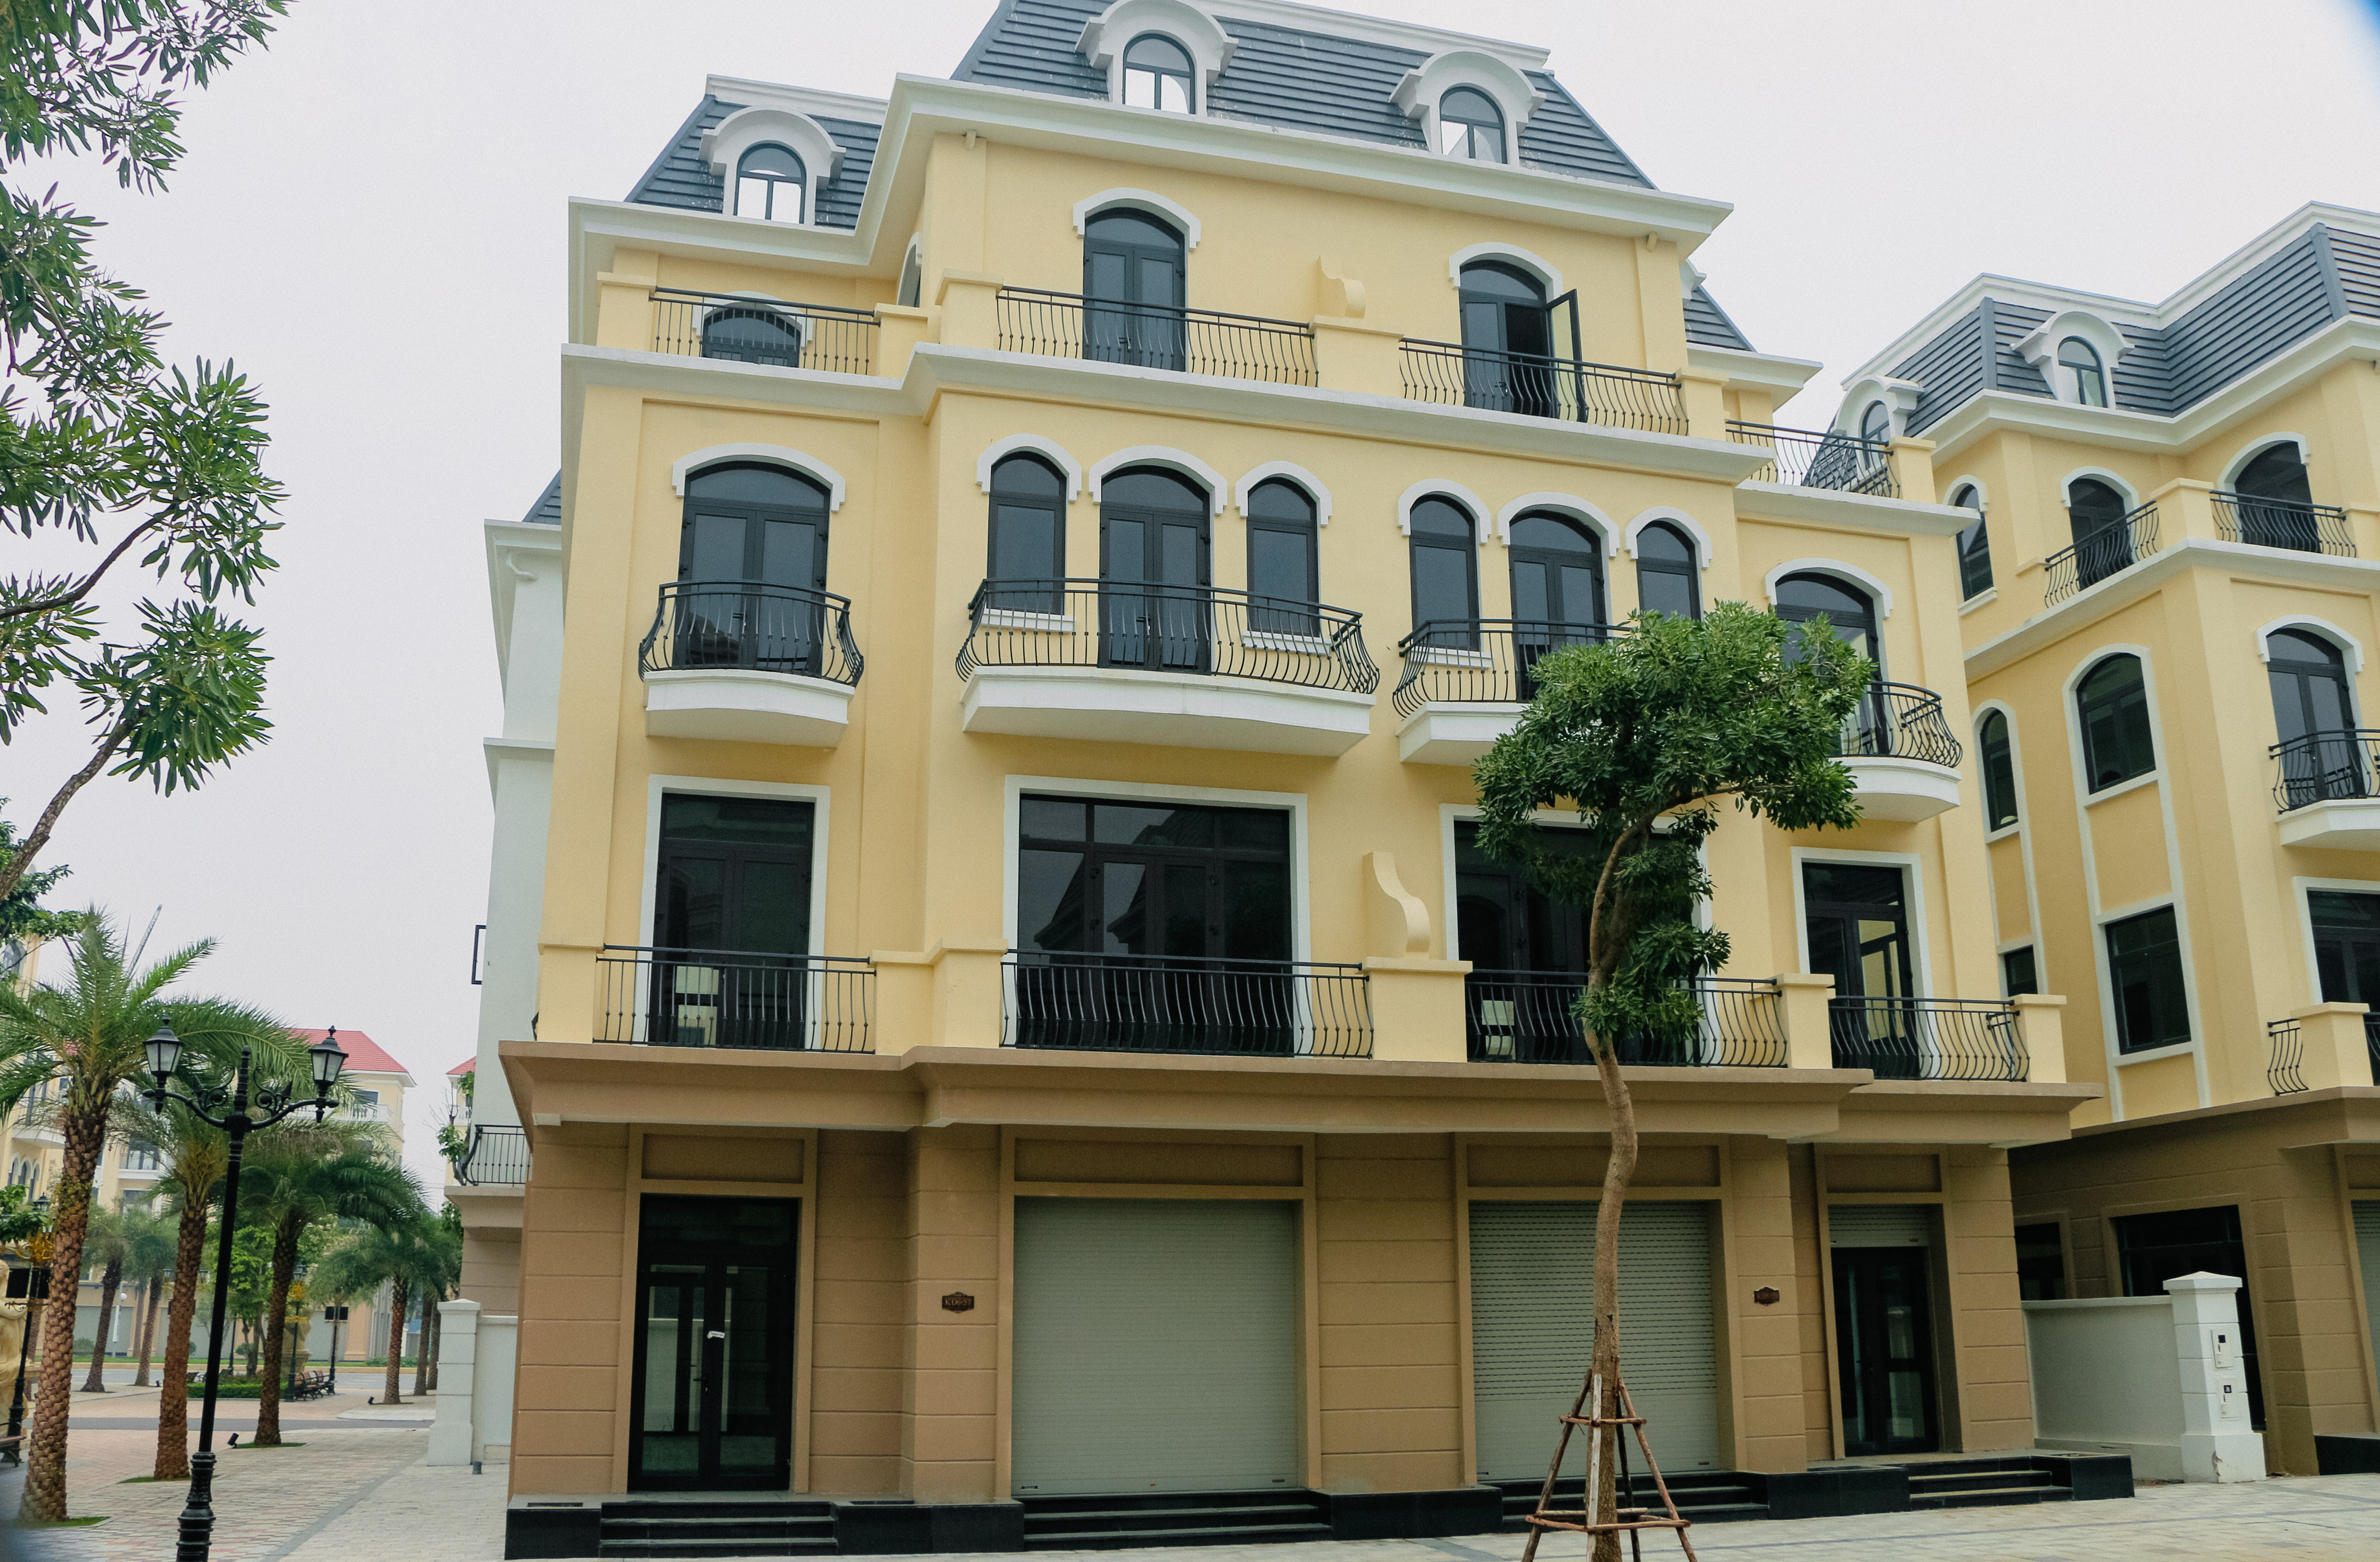 Cần bán nhà liền kề Kinh Đô 3, đối diện Quảng Trường Kinh Đô Ánh Sáng Vinhomes Ocean Park 2 - DT: 148m2